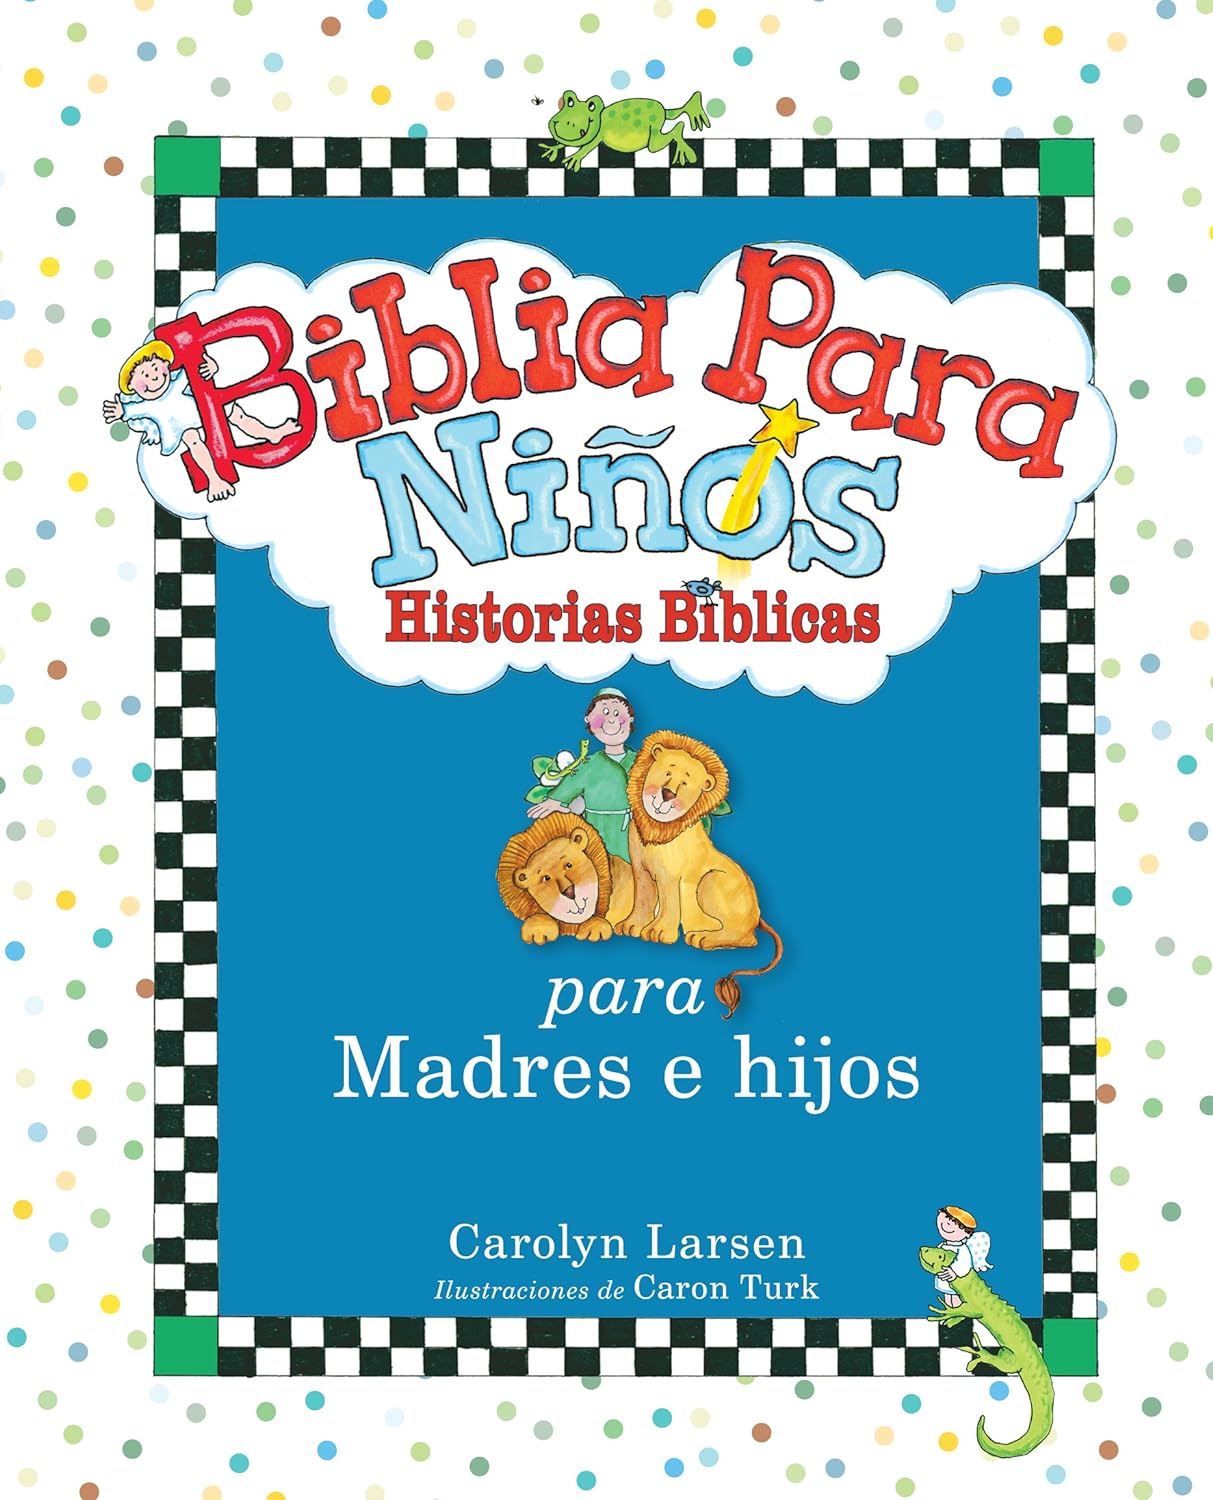 Biblia para niños historias biblicas para madres e hijos